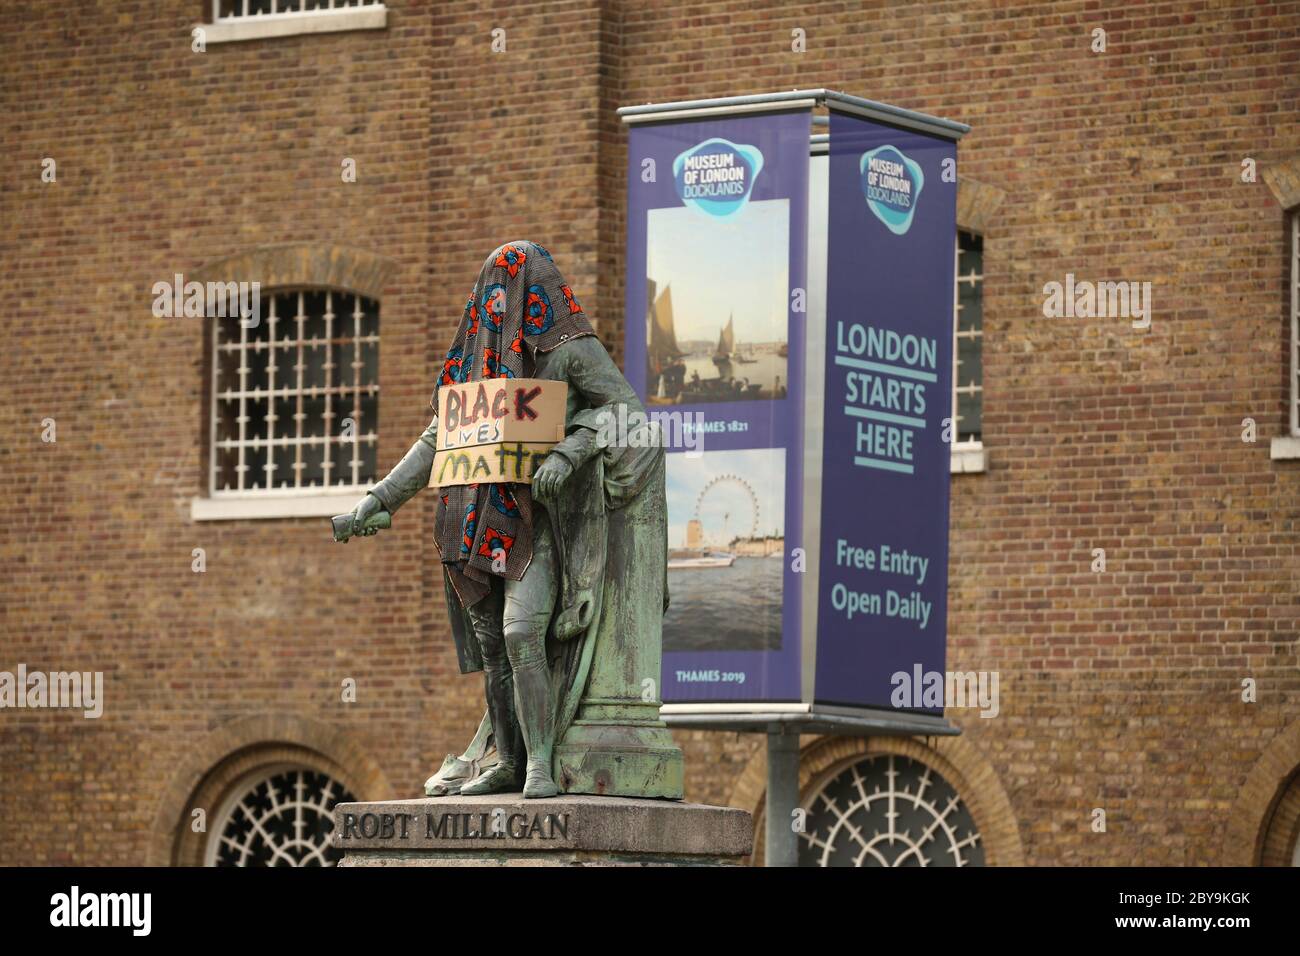 Una statua del proprietario di schiavi Robert Milligan a West India Quay, Londra est come consigli laburisti in tutta l'Inghilterra e Galles inizierà a rivedere monumenti e statue nelle loro città e città, dopo una protesta ha visto attivisti anti-razzismo abbattere una statua di un commerciante di schiavi a Bristol. Foto Stock